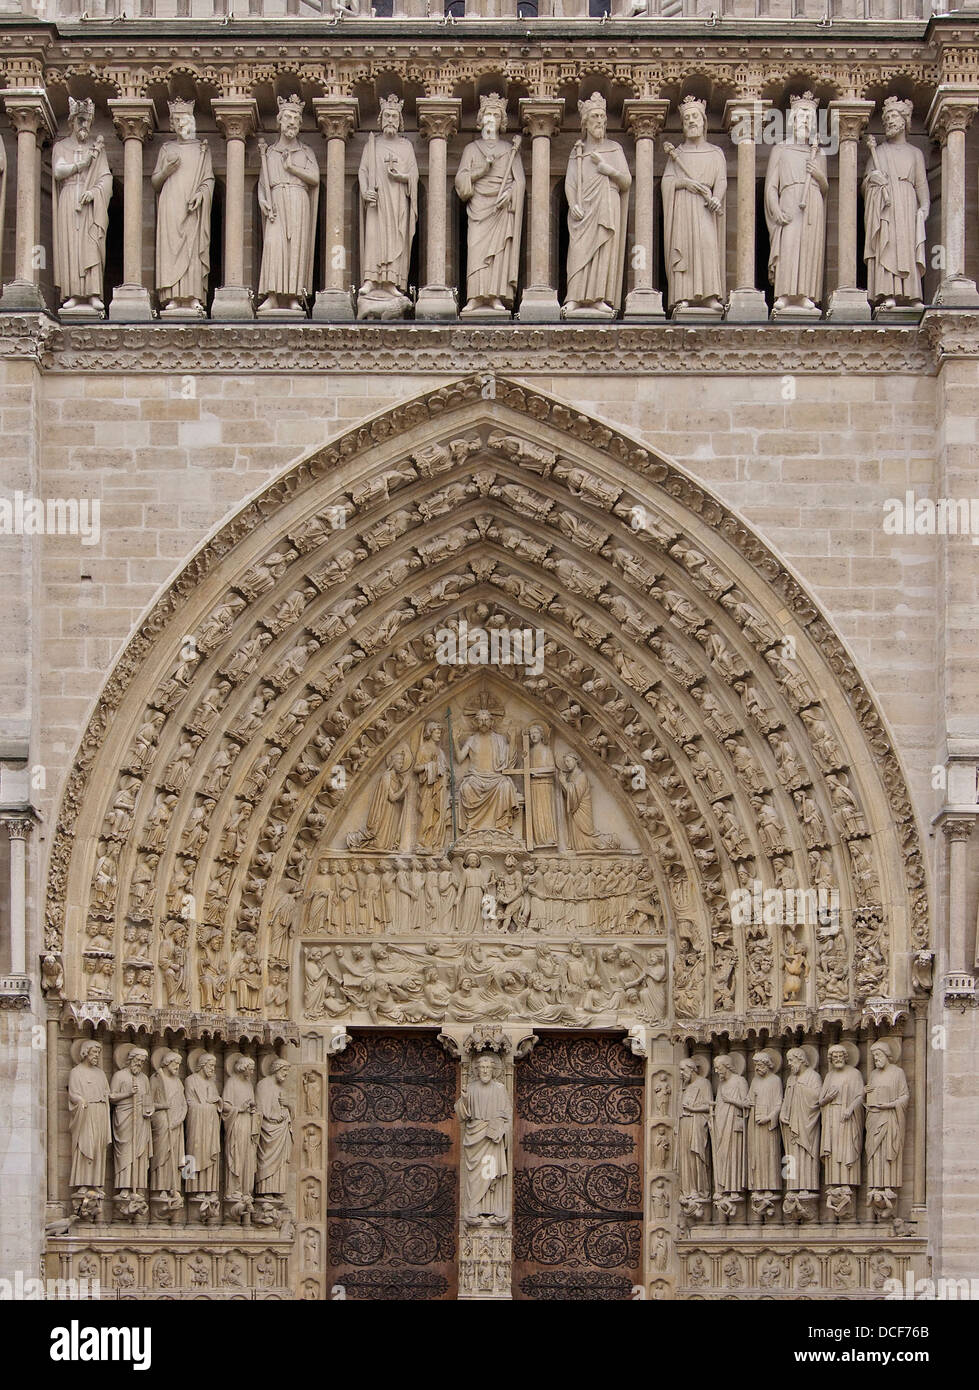 "Le jugement dernier", et une partie de la "galerie des Rois', centre et porte principale de la Cathédrale Notre Dame de Paris, 13e siècle Banque D'Images